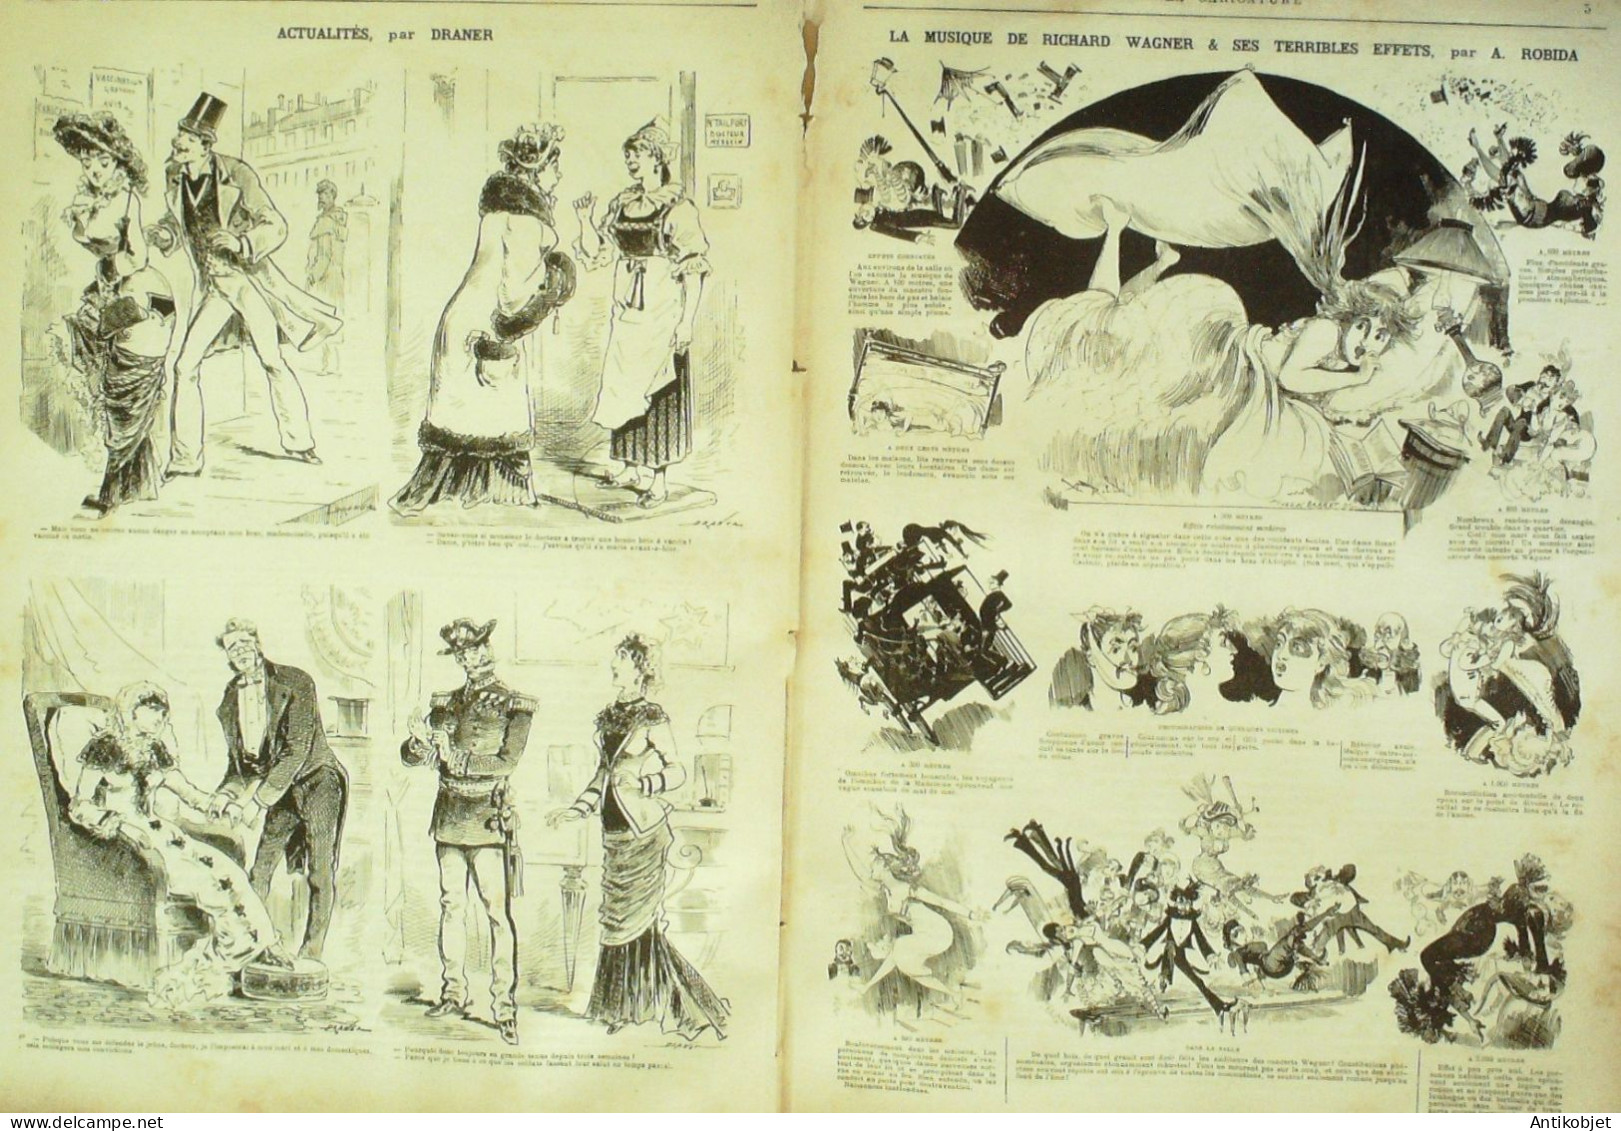 La Caricature 1880 N°  13 Jean De Nivelle Richard Wagner Robida Draner Morland Quidam - Zeitschriften - Vor 1900